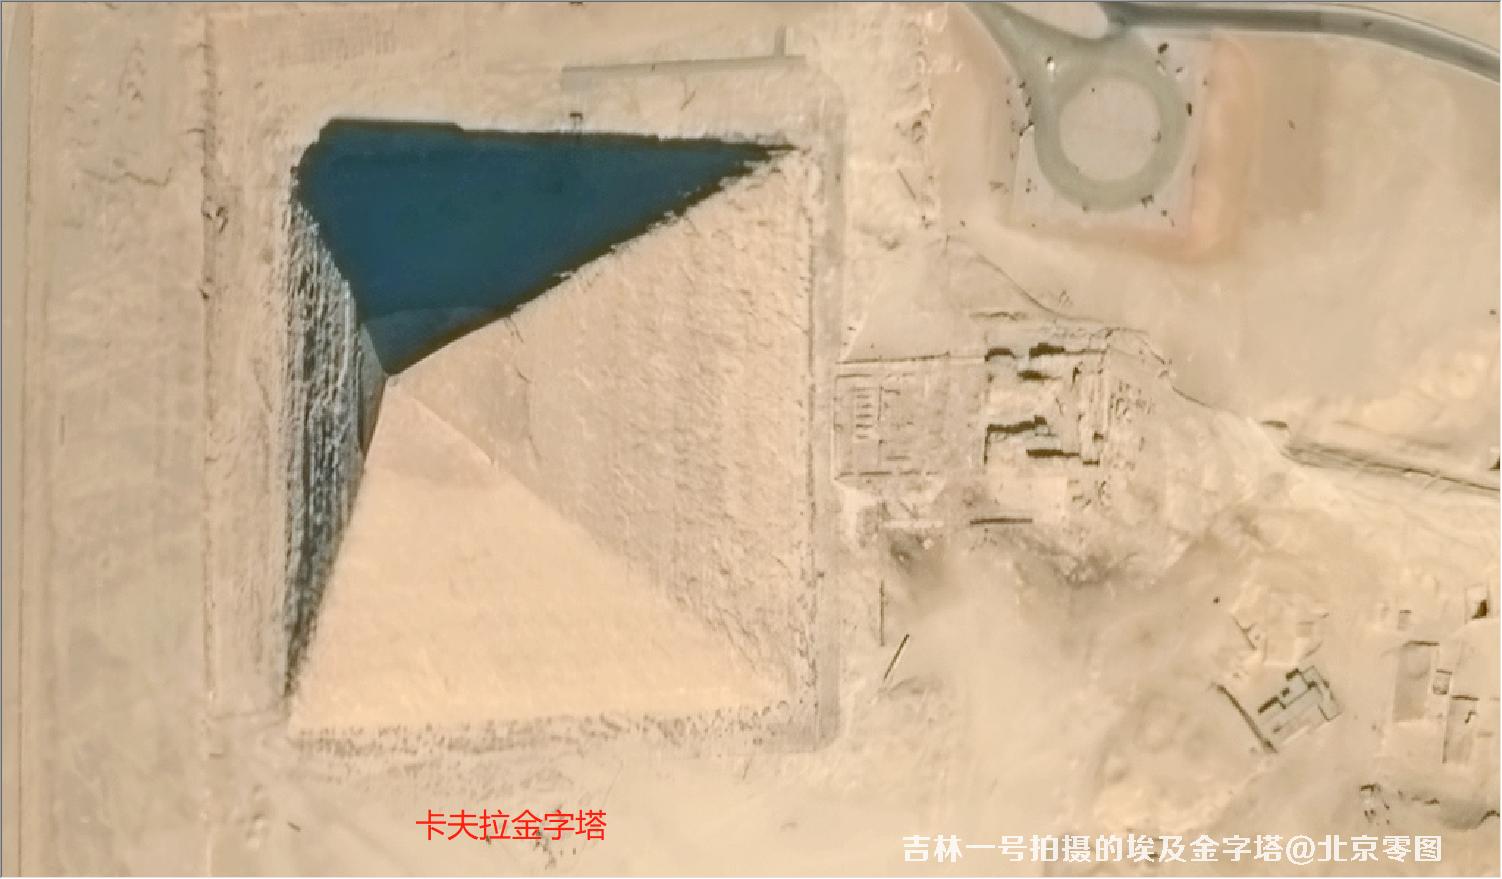 吉林一号宽幅01A卫星拍摄的埃及金字塔卫星图